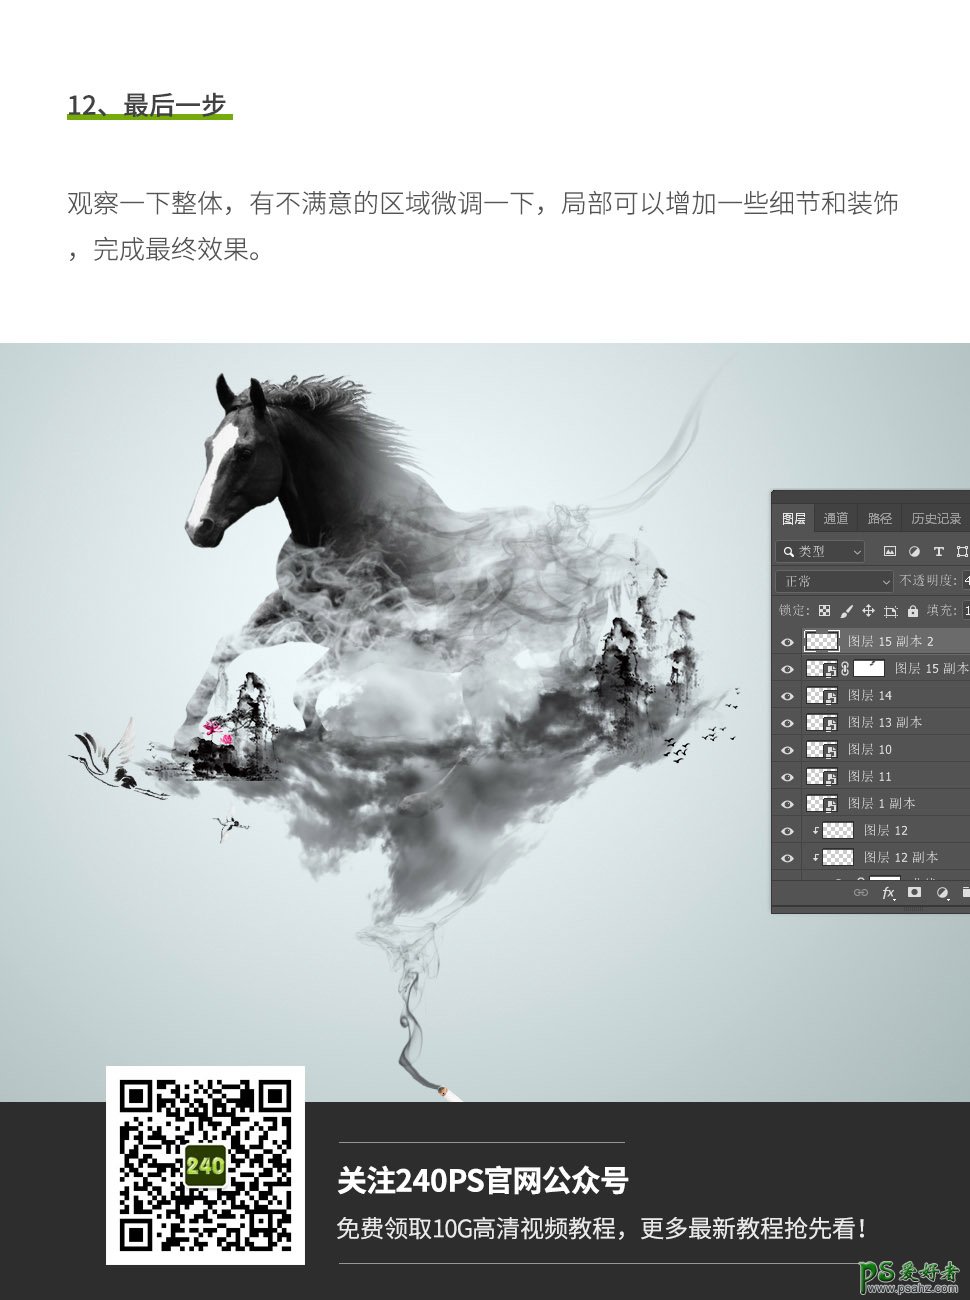 Photoshop创意合成一幅水墨烟雾效果的竣马图,唯美中国风。